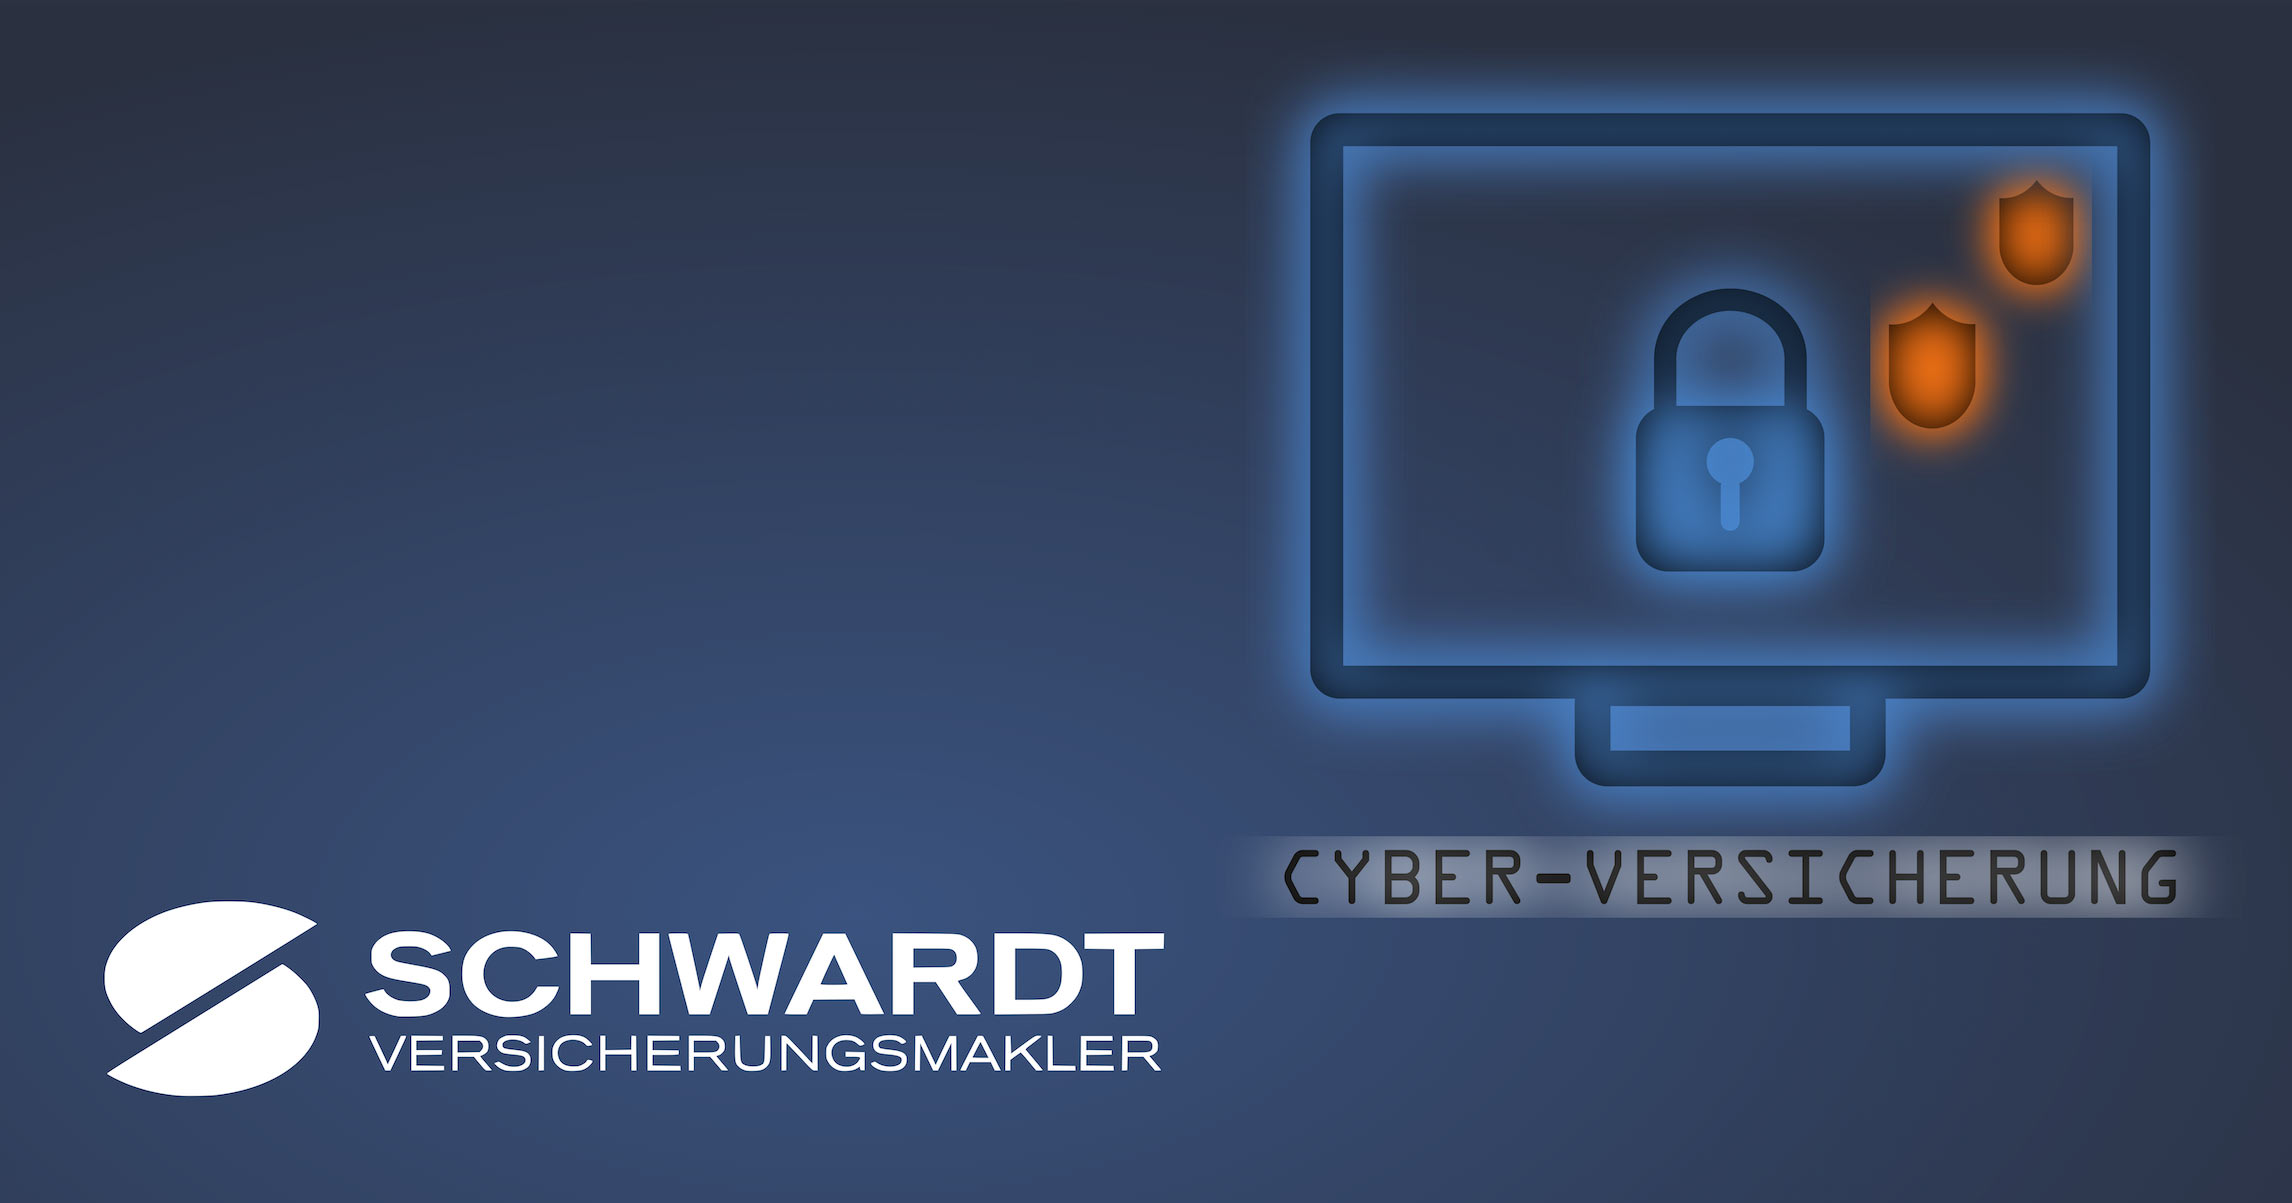 Schwardt Versicherungsmakler ist auf Cyber-Versicherungen spezialisiert.